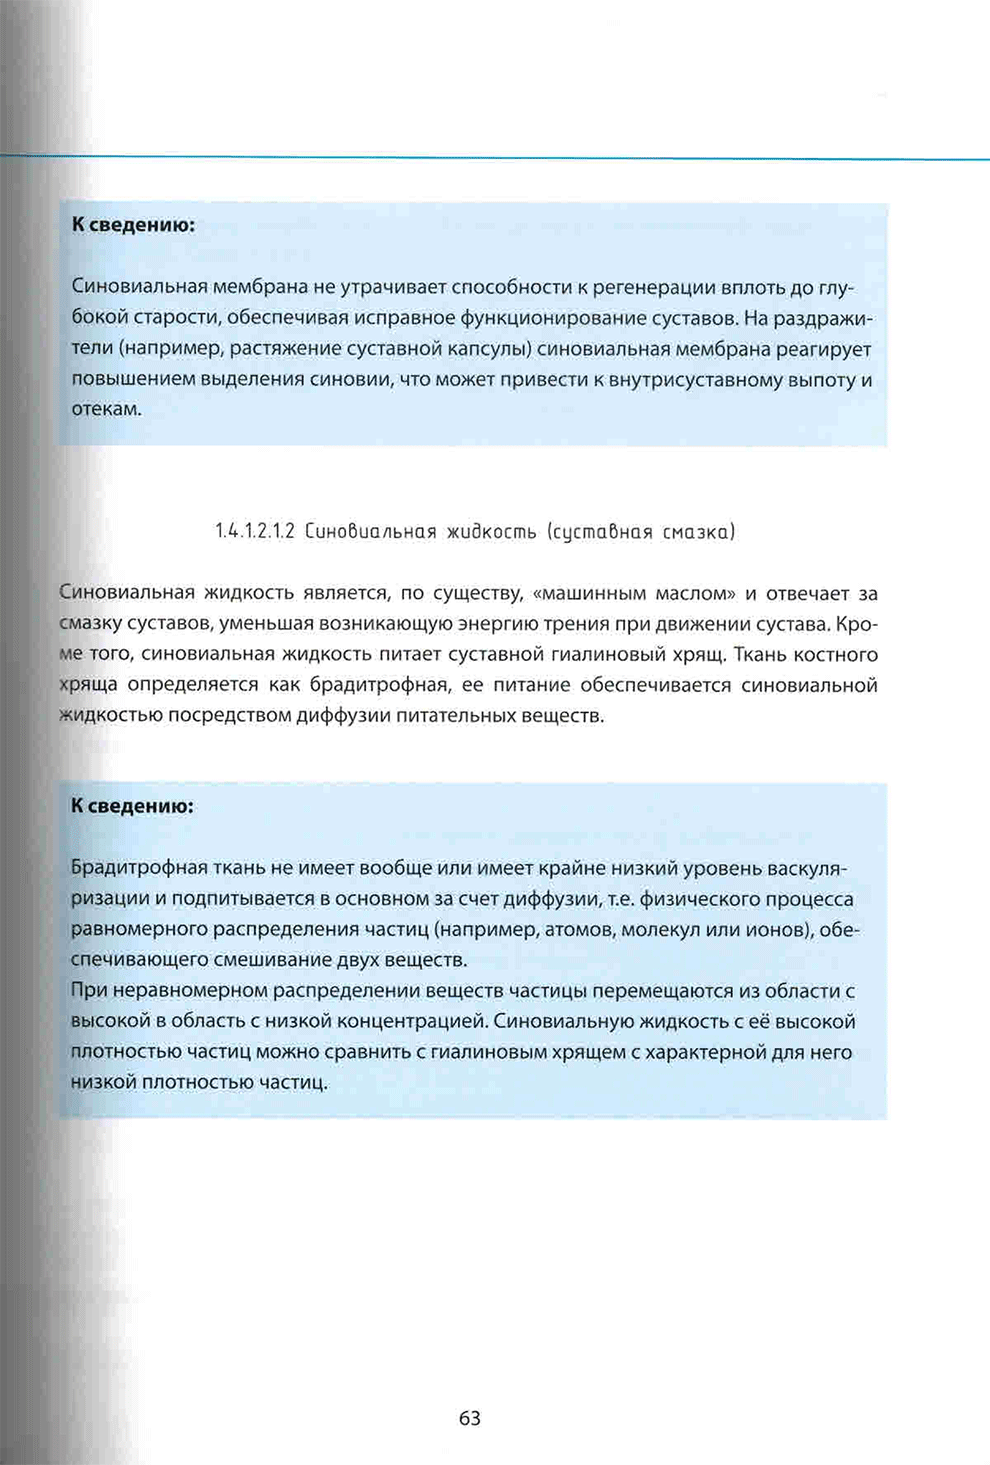 Пример страниц из книги "Понять стопу. Учебное пособие" - Йорг Хальфманн